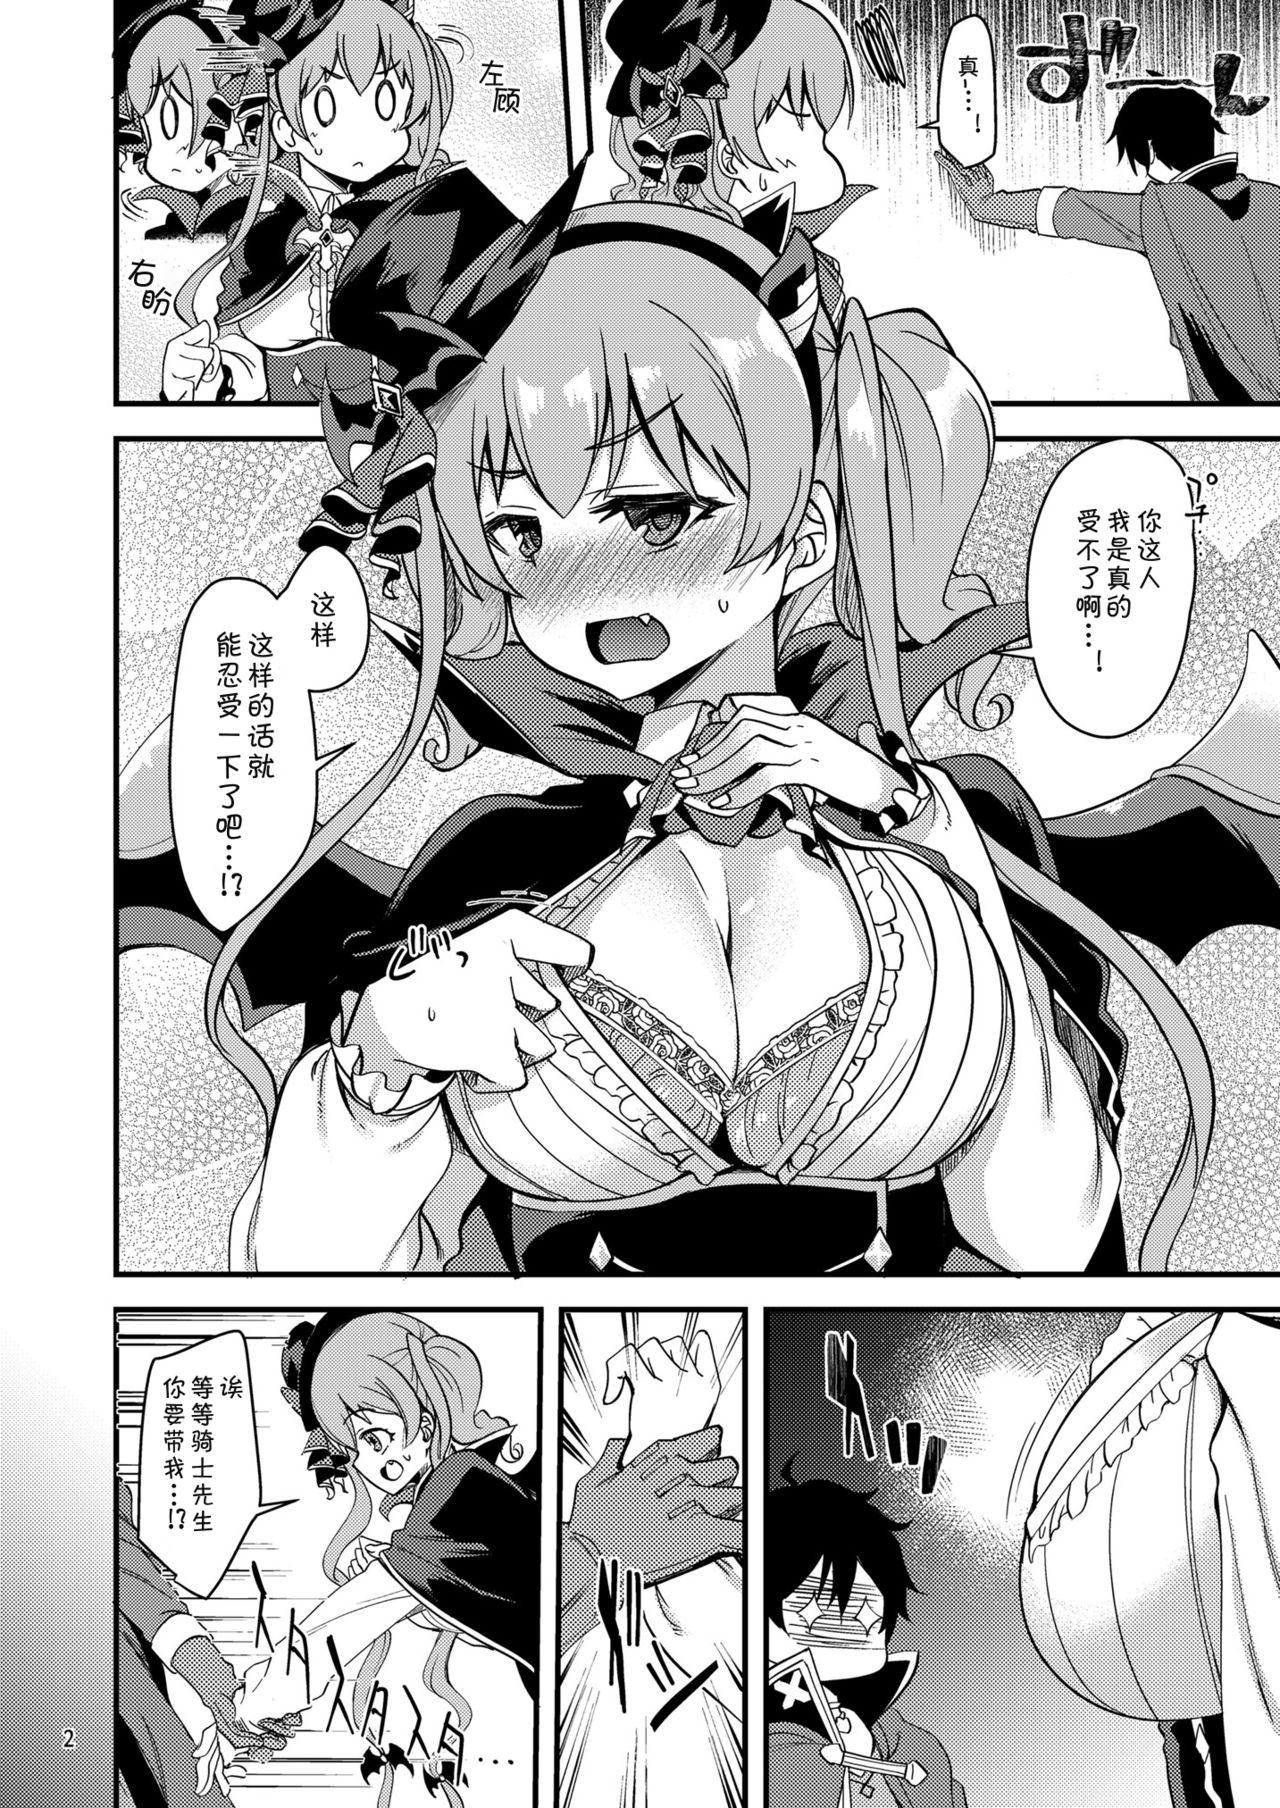 Gayporn Tsumugi Make Heroine Move!! 05 - Princess connect Fuck - Page 3